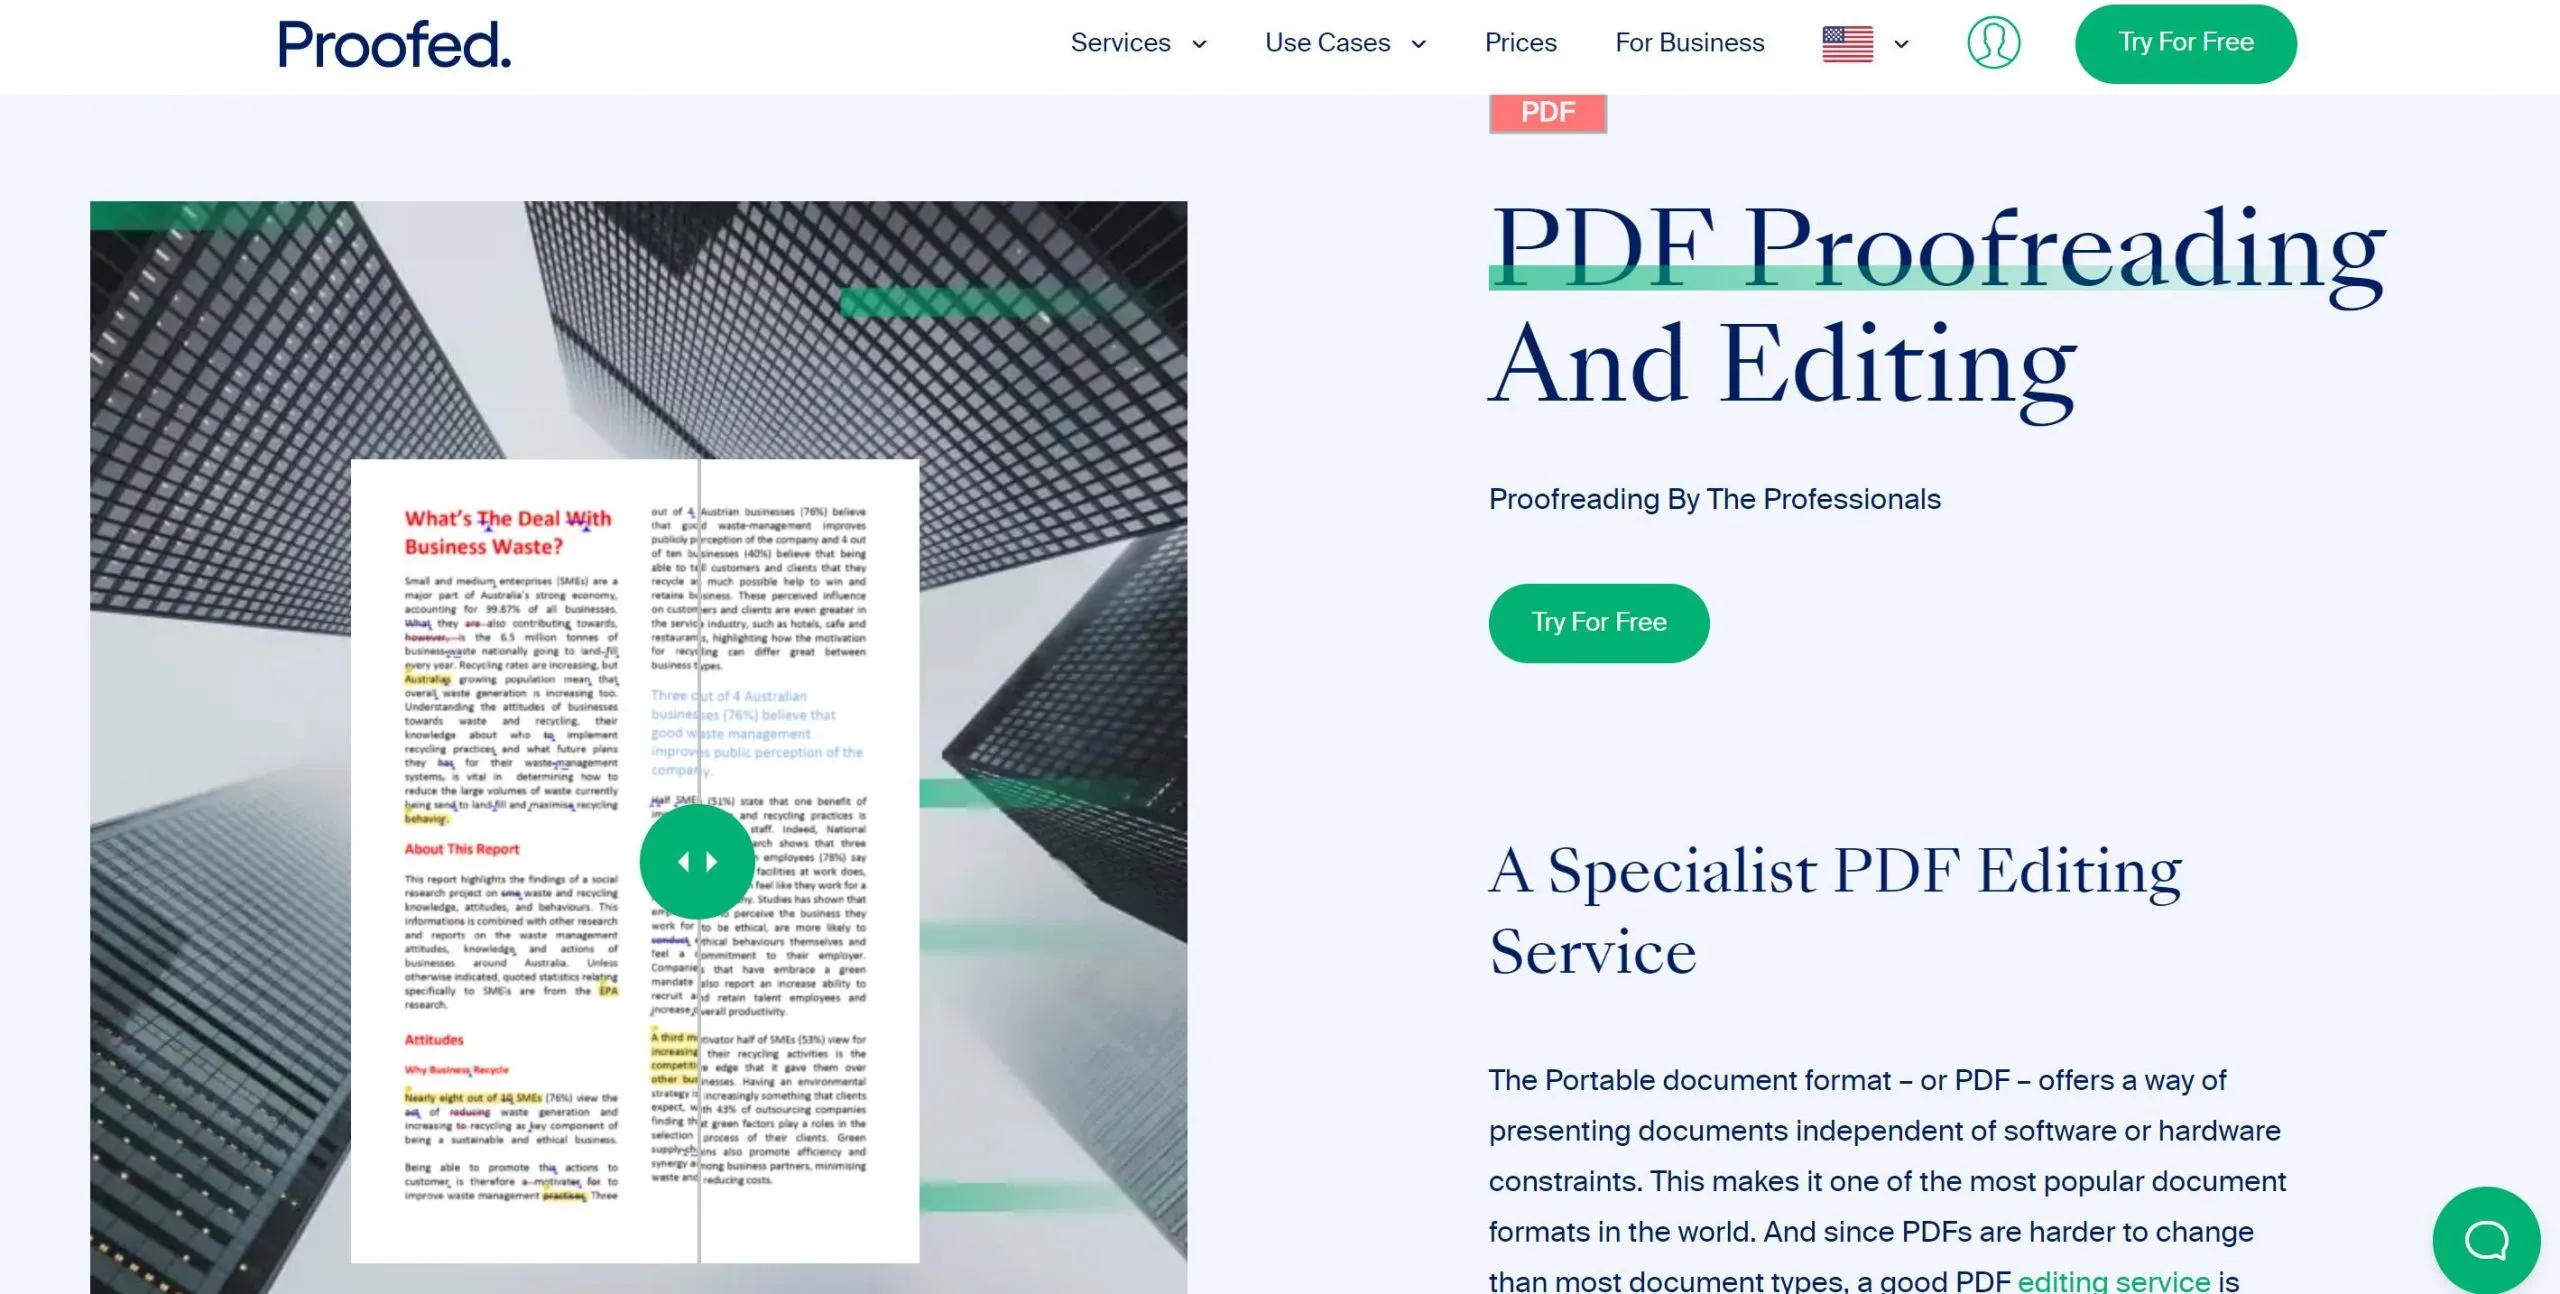 pdf proofreader proofed